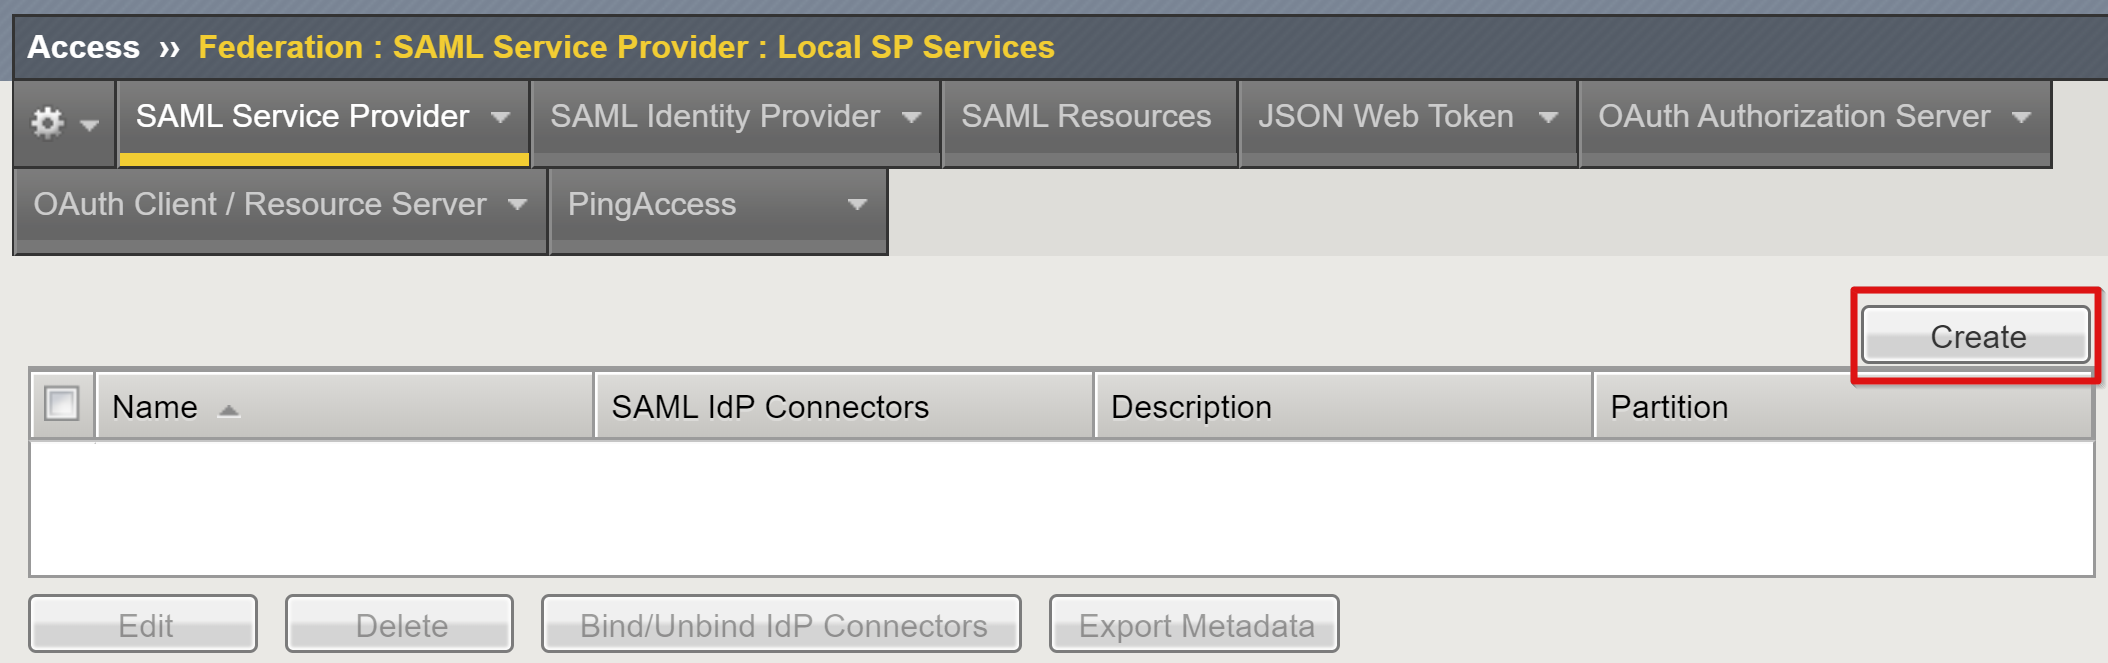 Captura de tela da opção Criar em SAML Service Provider on Local SP Services.